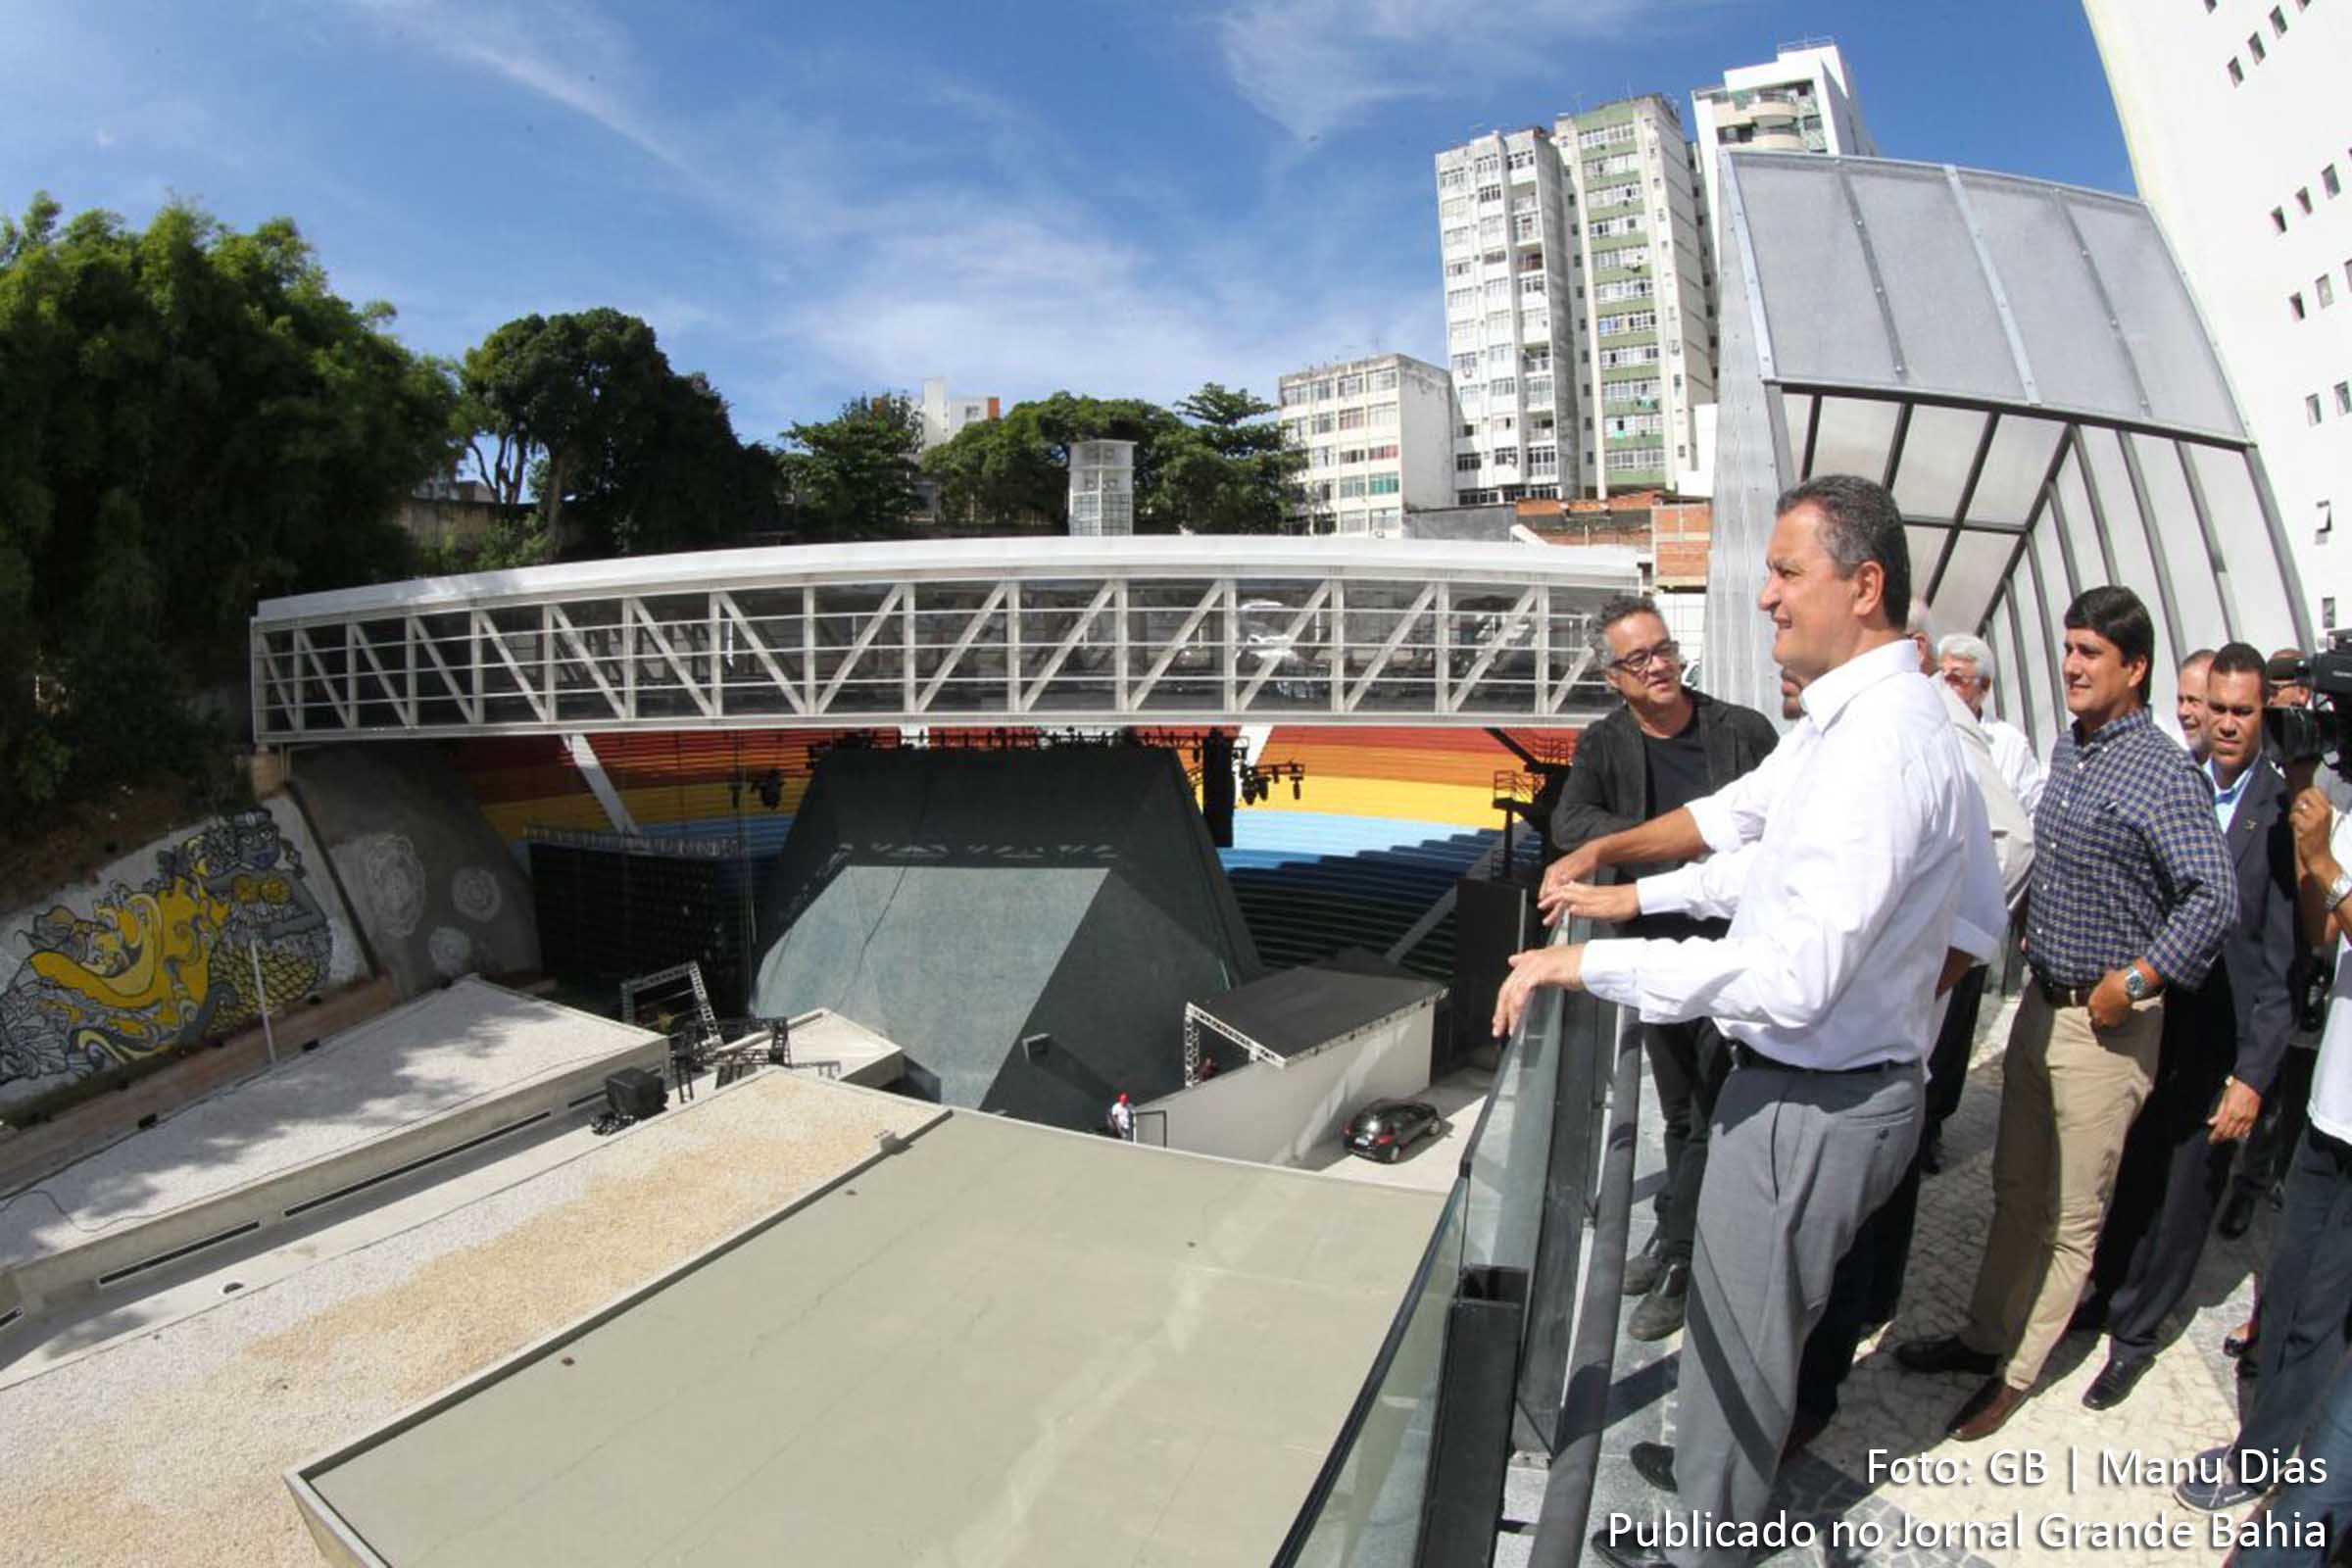 Governador Rui Costa dos Santos durante visita às novas instalações da Concha Acústica do Teatro Castro Alves.